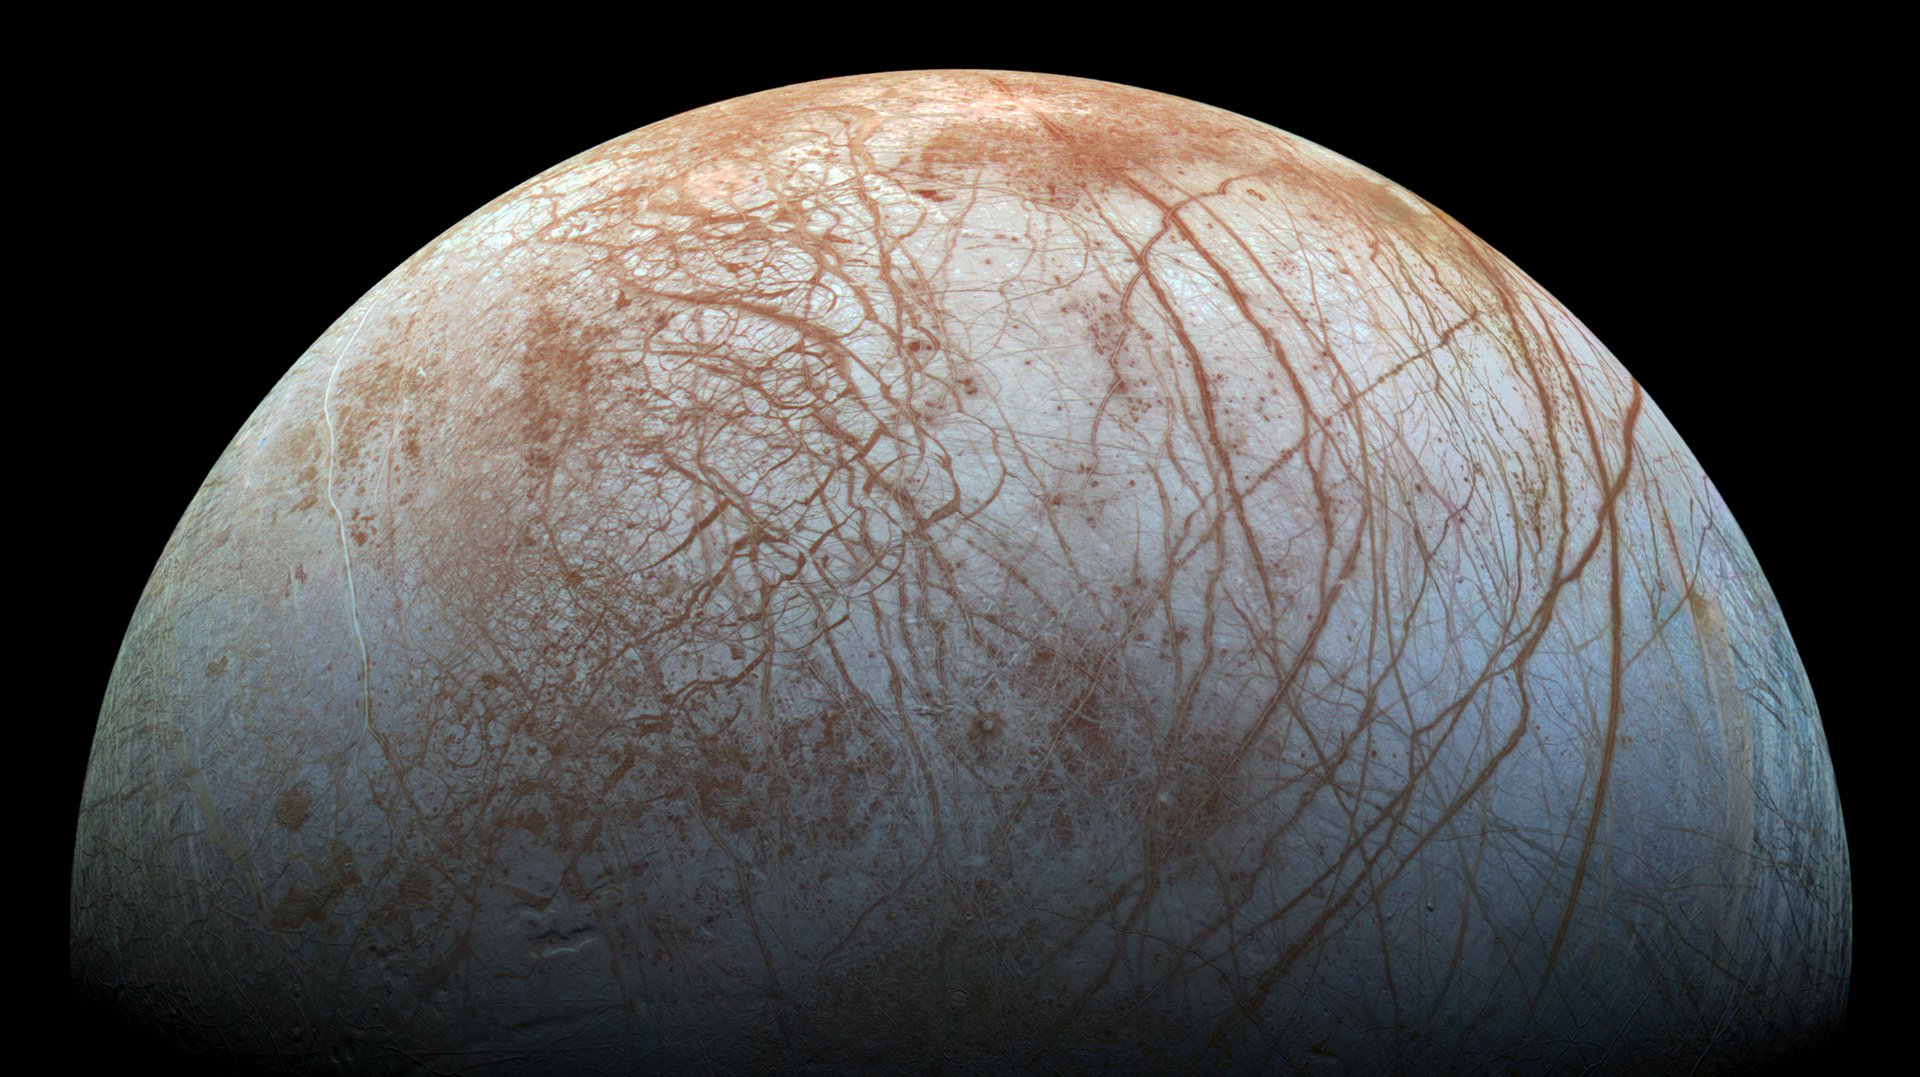 De hielo, el satélite de júpiter descubierto agudas 15-метровыми espinas